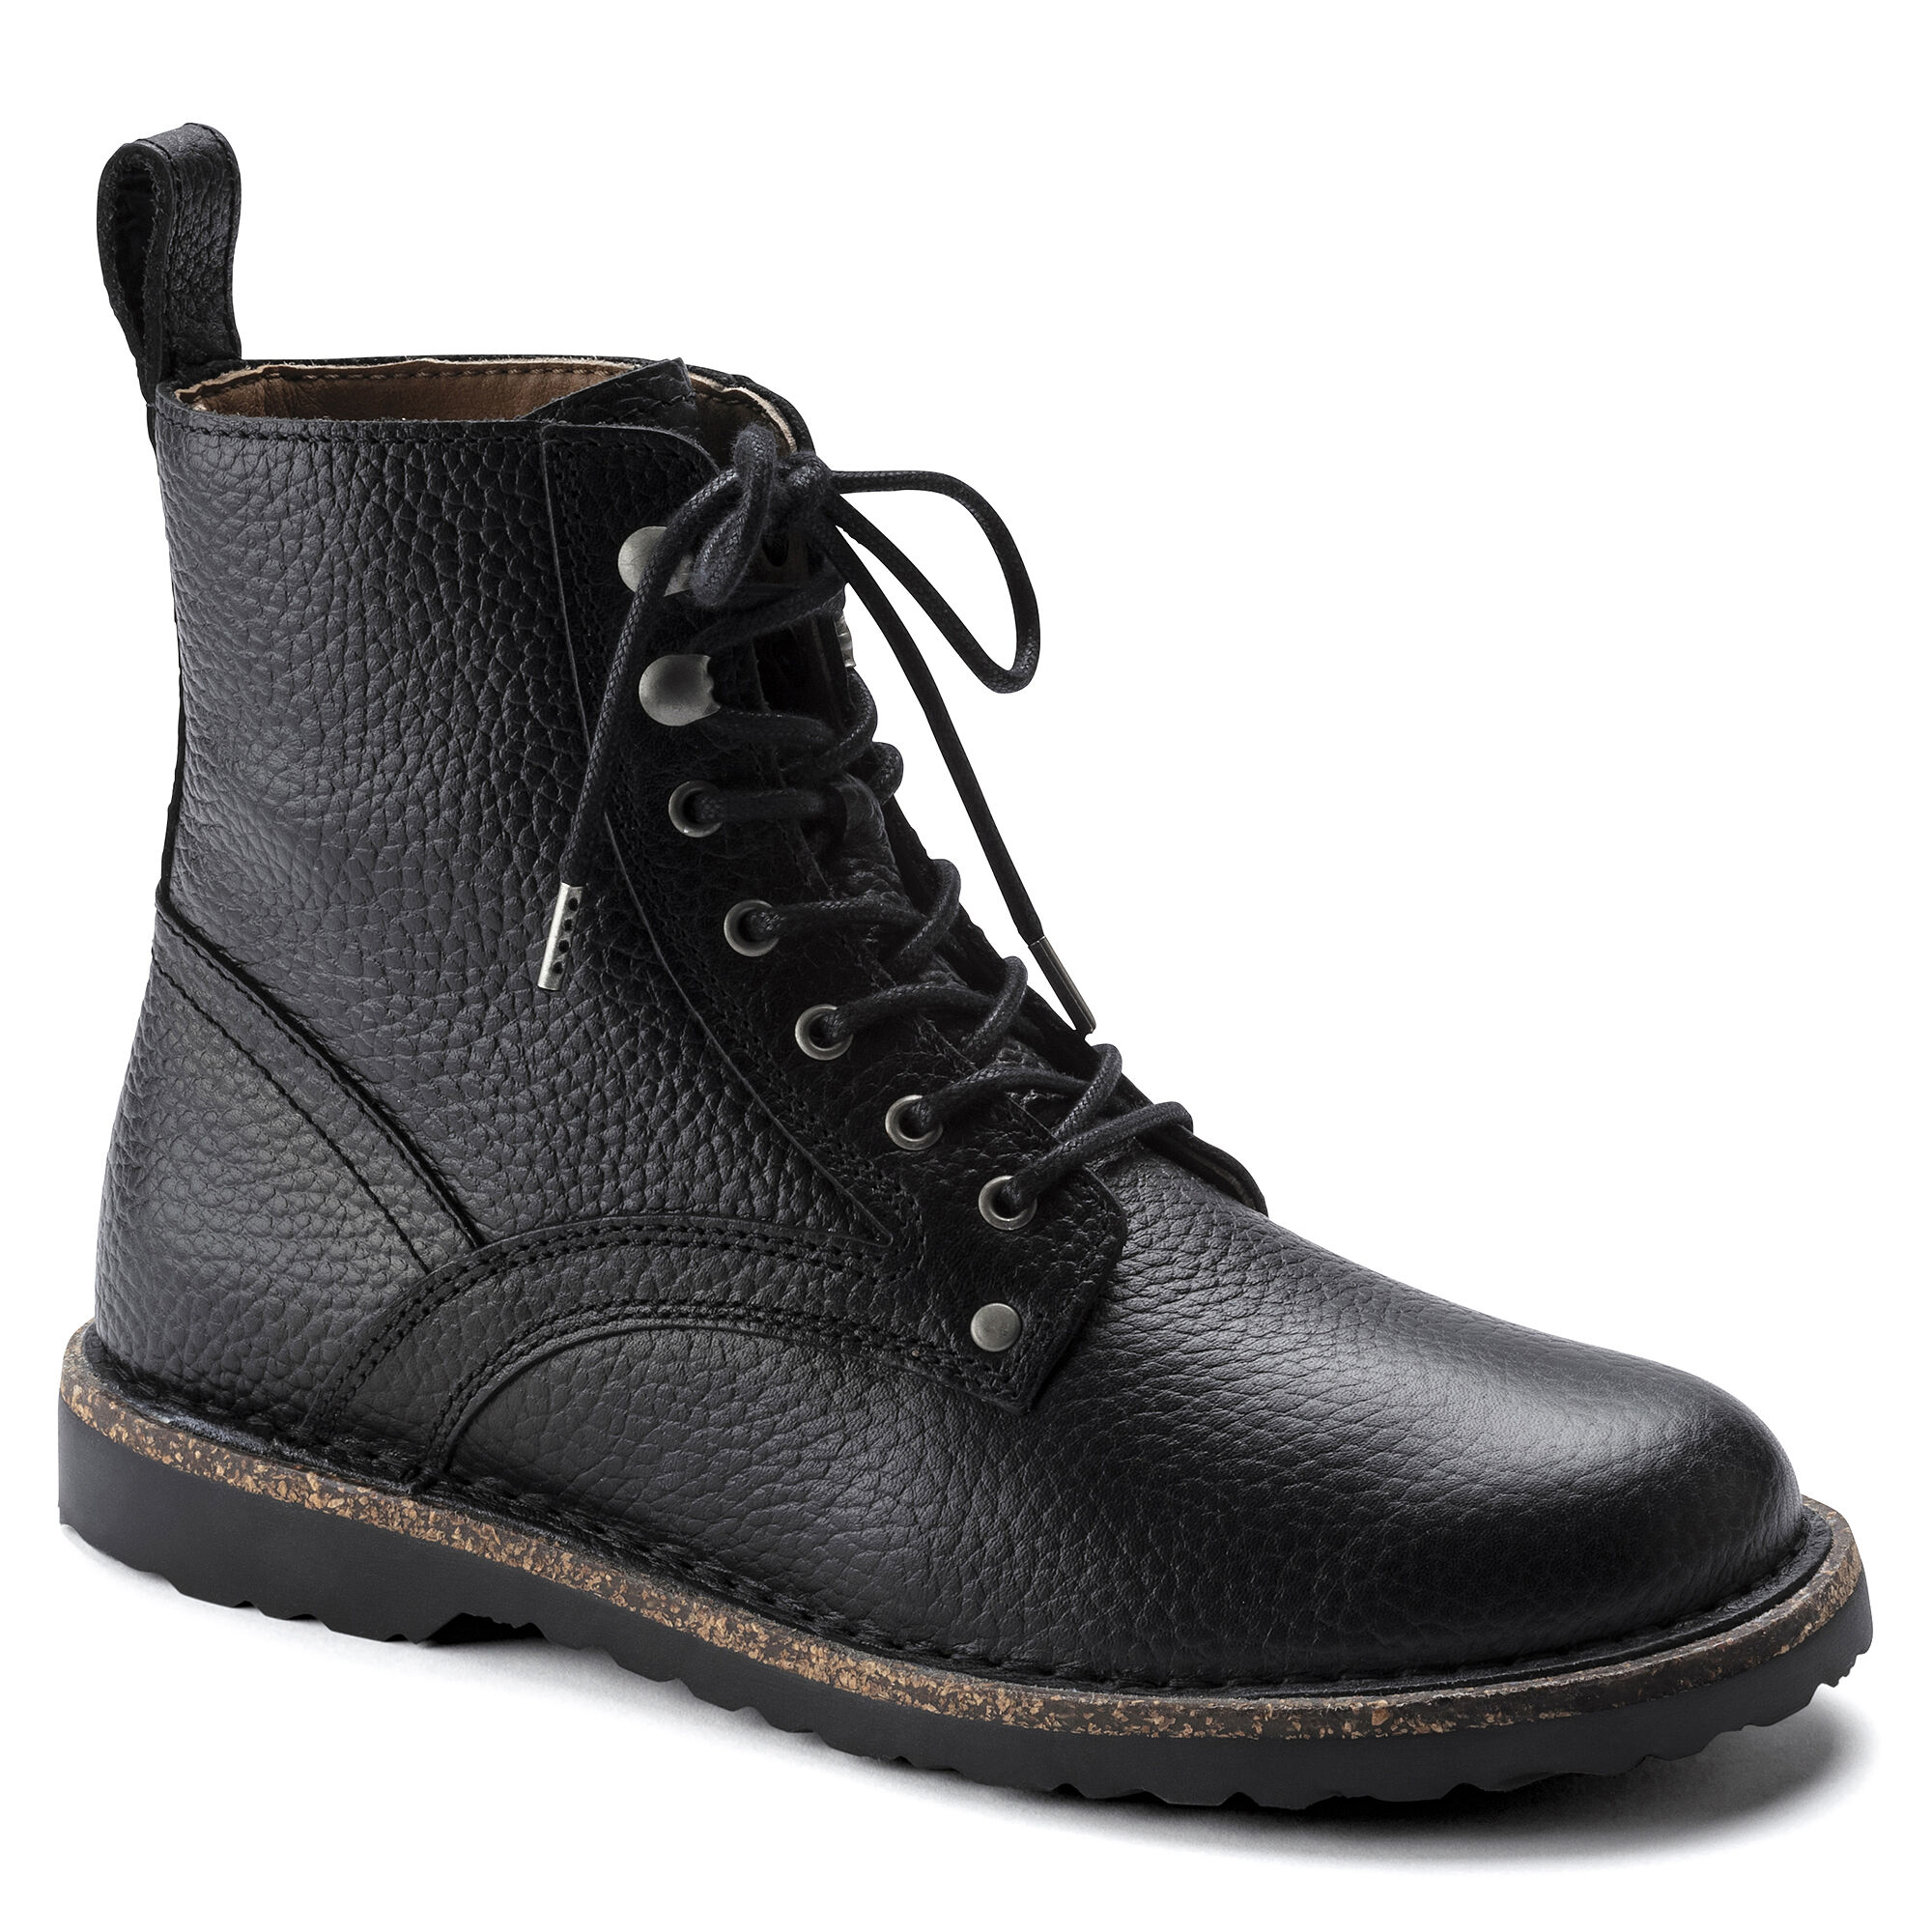 birkenstock boots men's